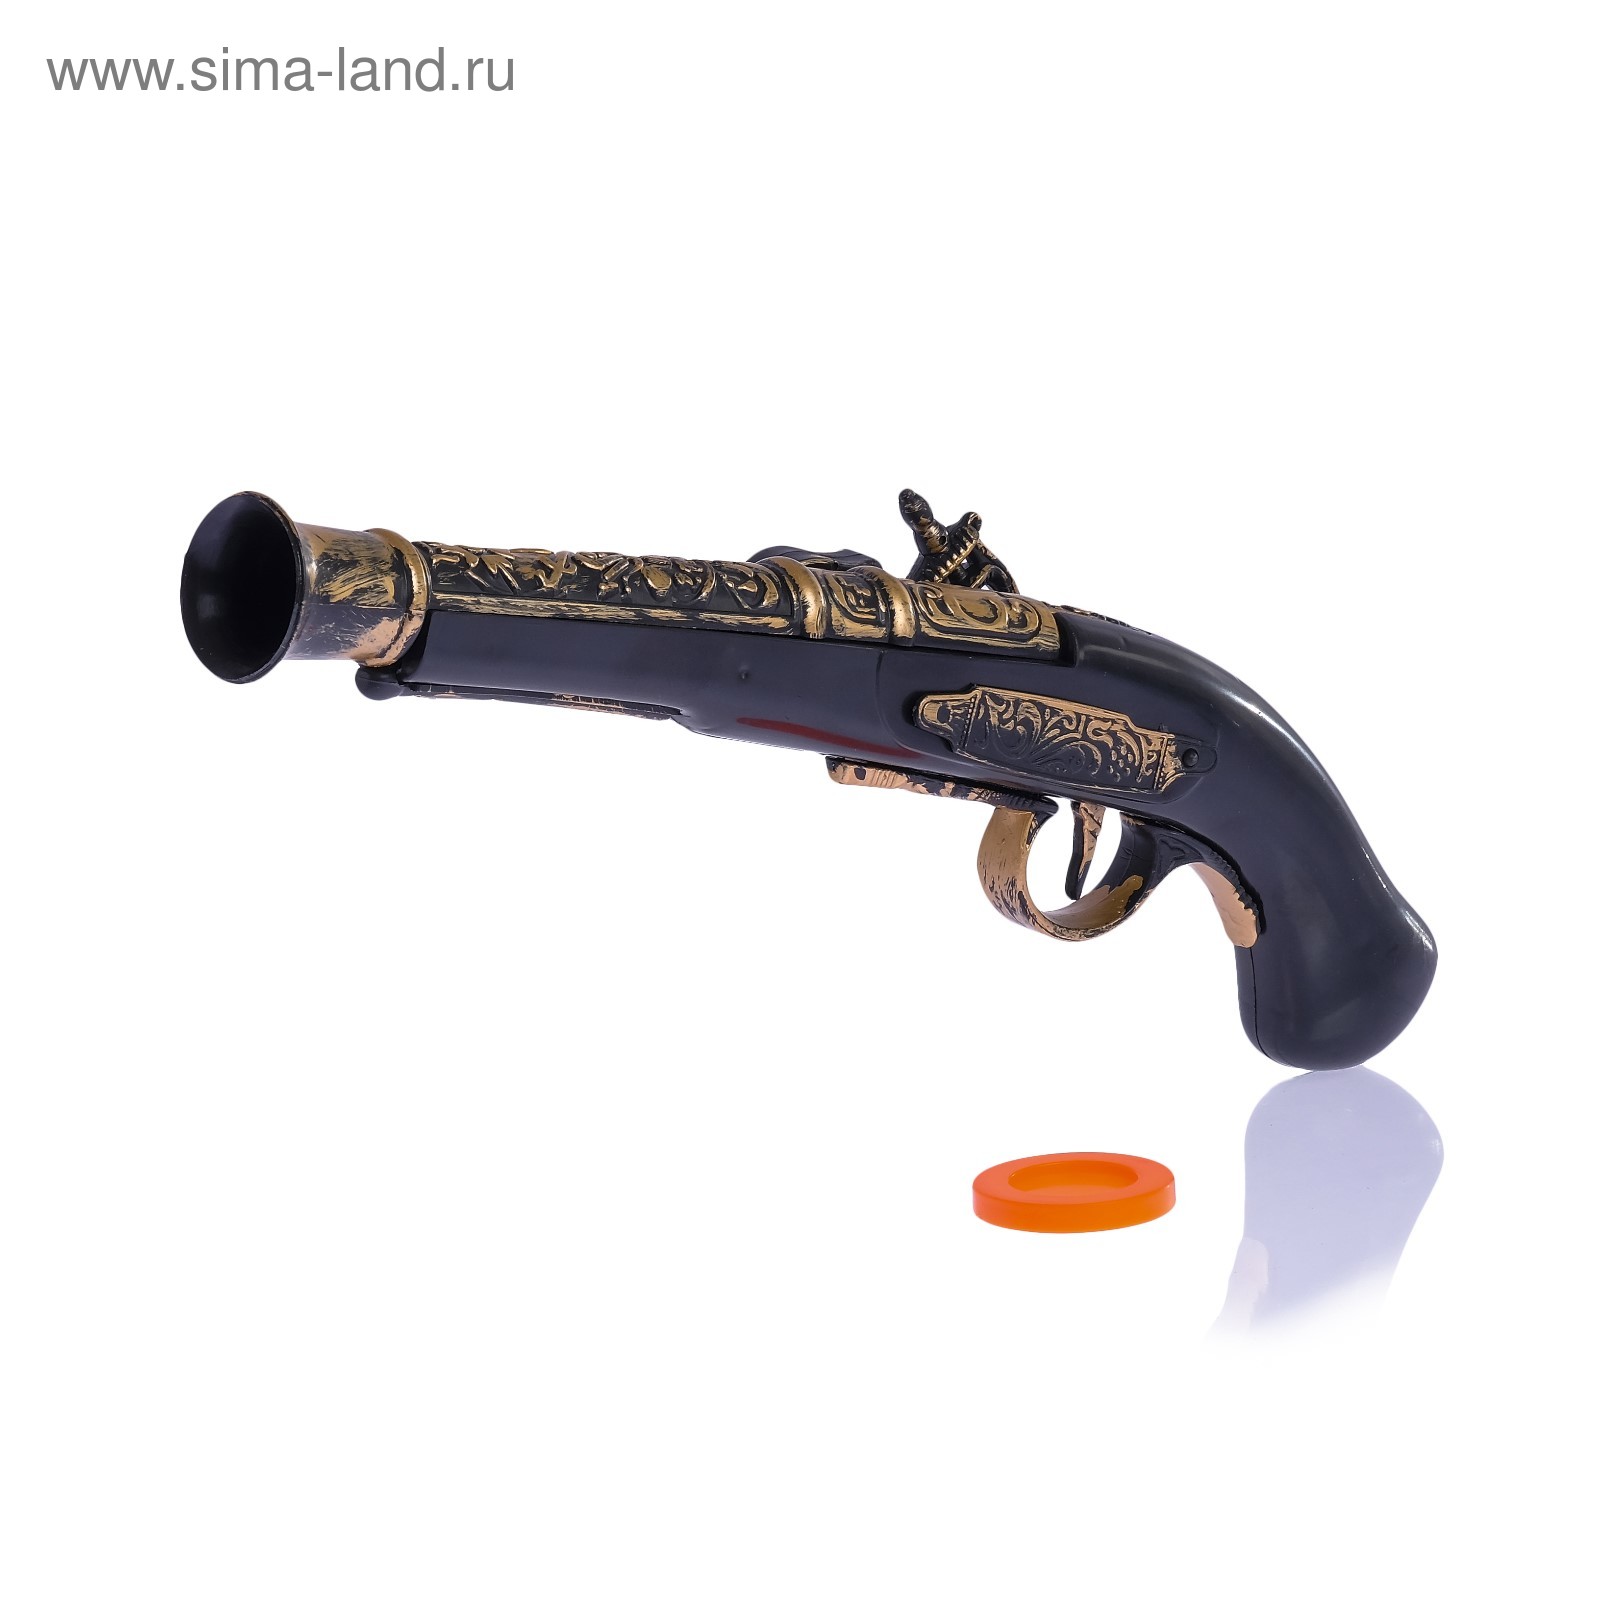 toy flintlock pistol with sound